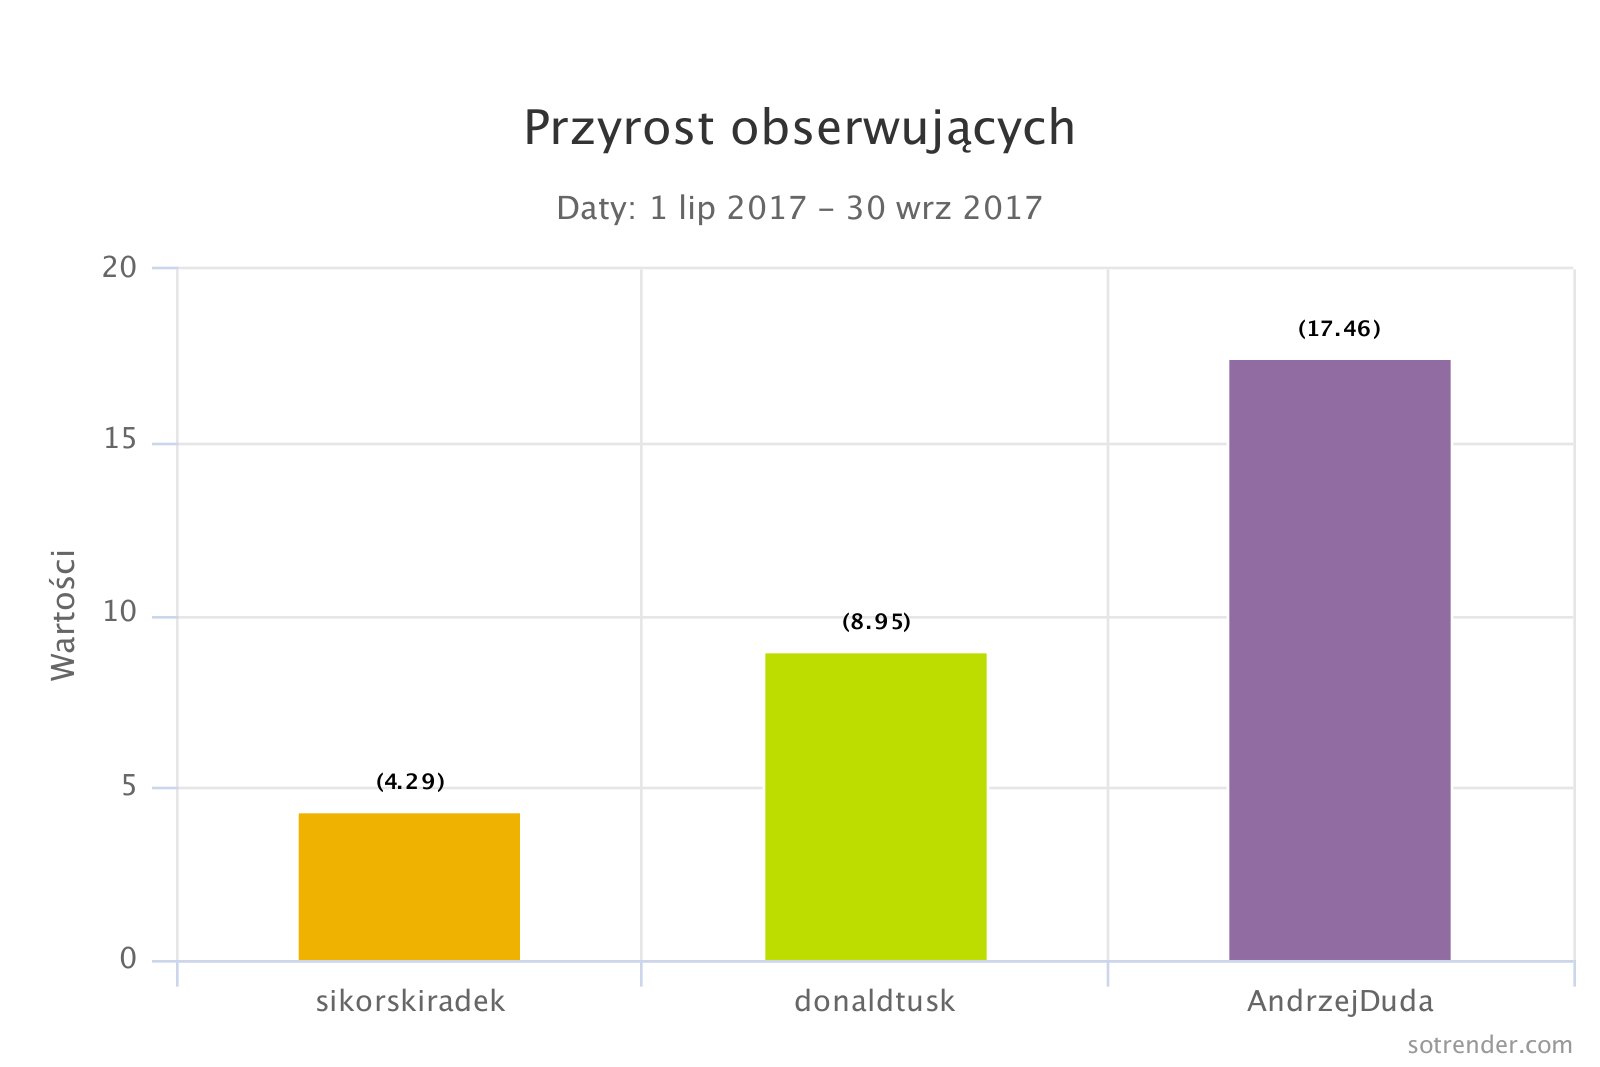 Przyrost obserwujących najpopularniejsze konta polskich polityków na Twitterze